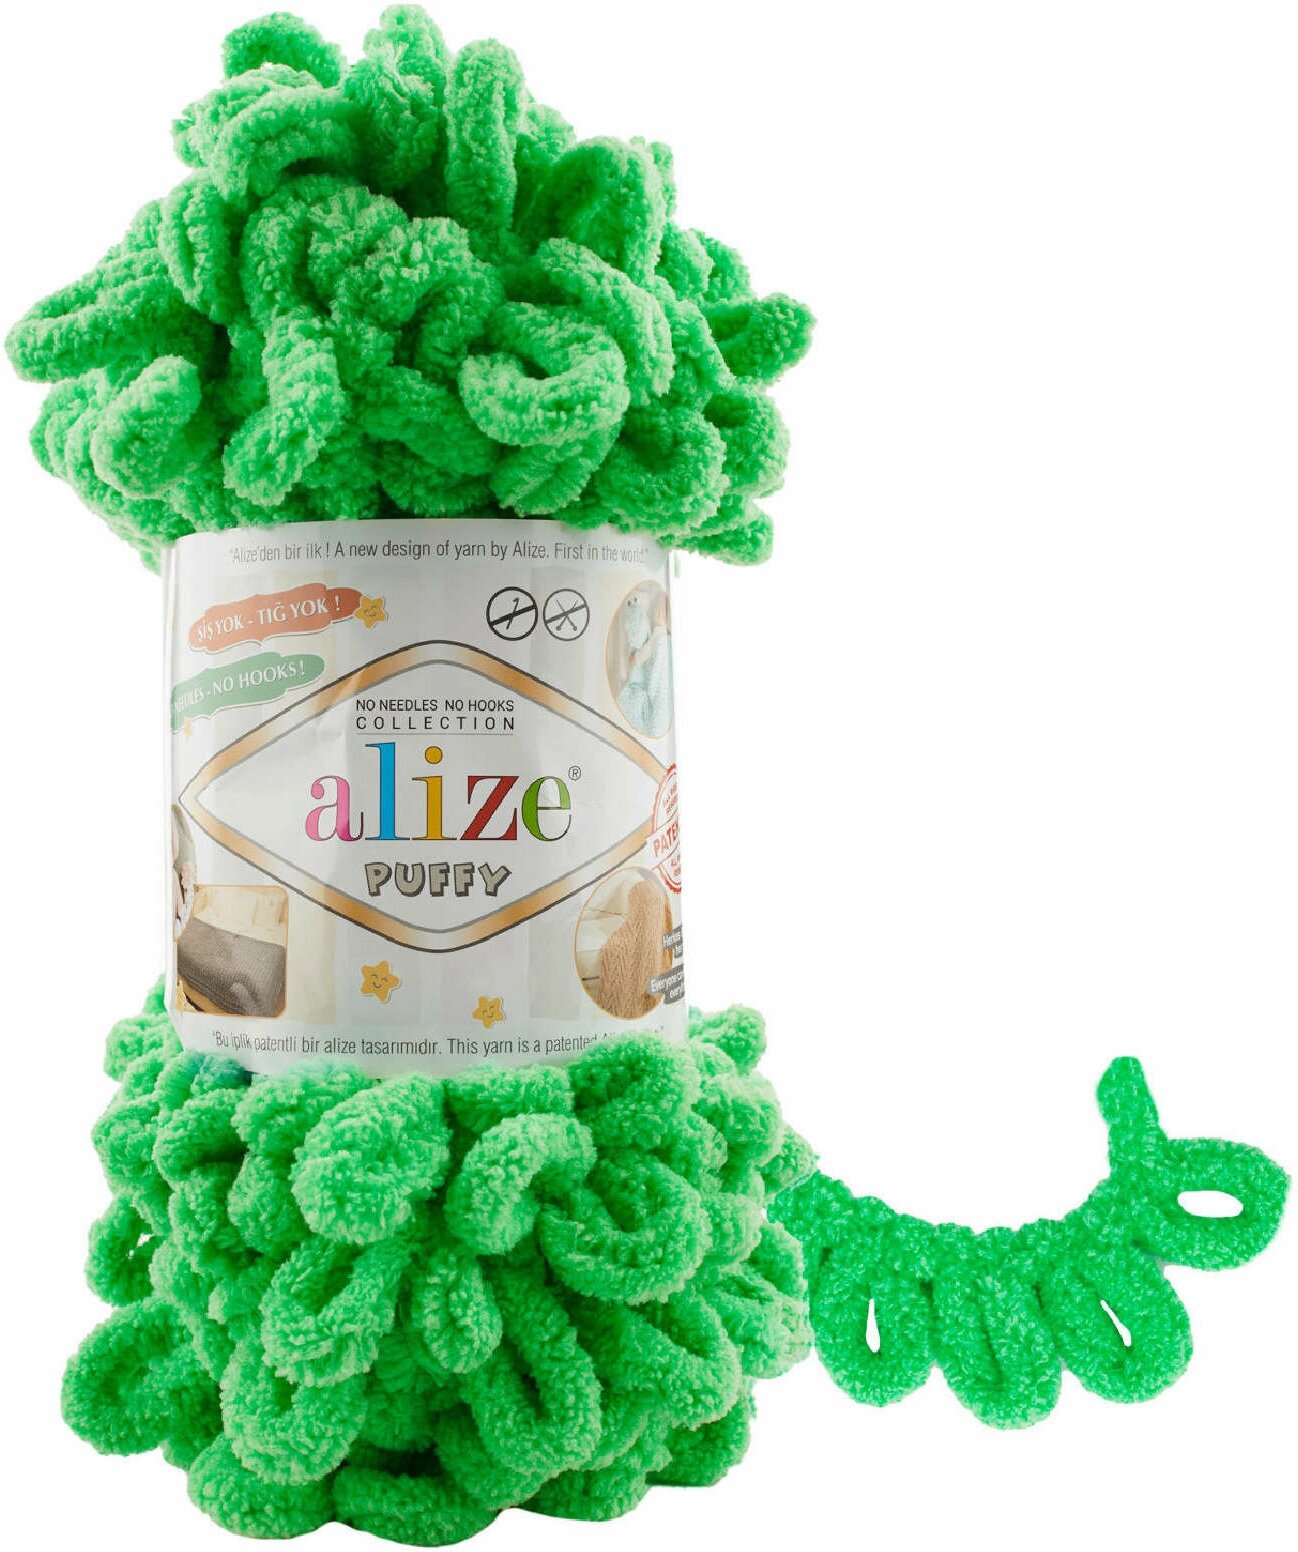 Пряжа Alize Puffy весенняя зелень (778), 100%микрополиэстер, 9м, 100г, 1шт